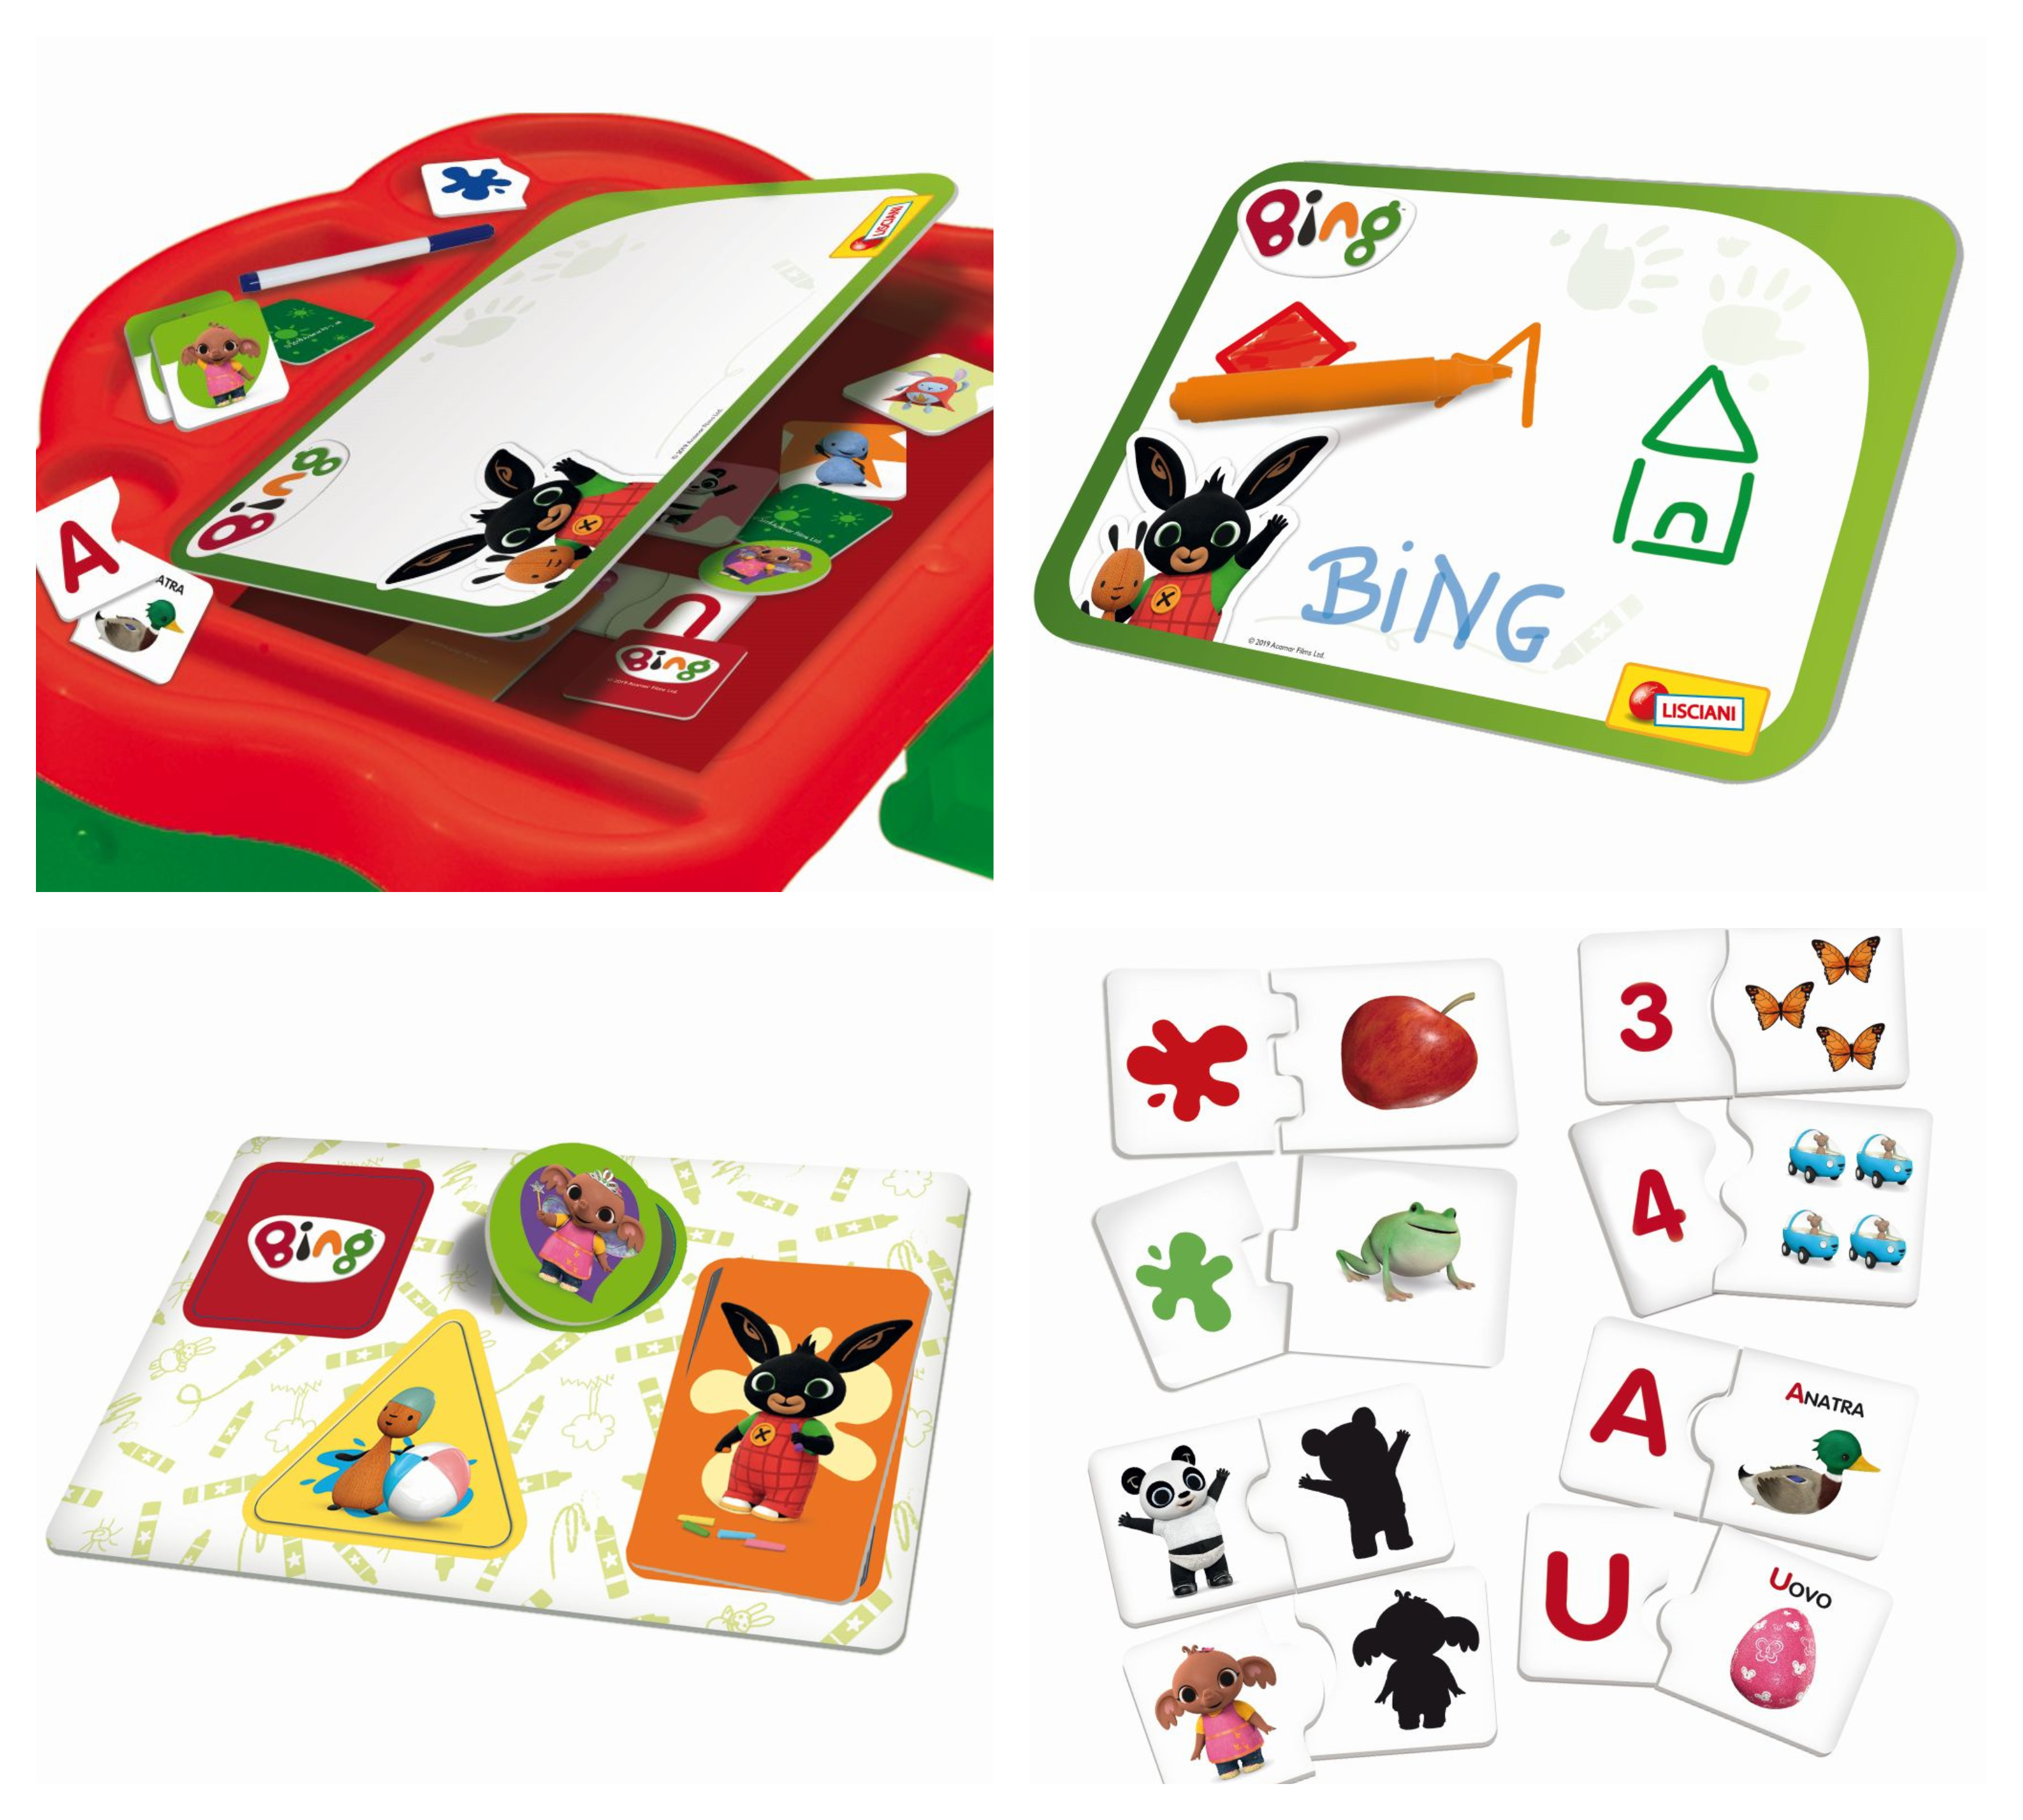 Hrací stůl a sada vzdělávacích her Liscianigioch Bing přináší obří porci zábavy a ponaučení.